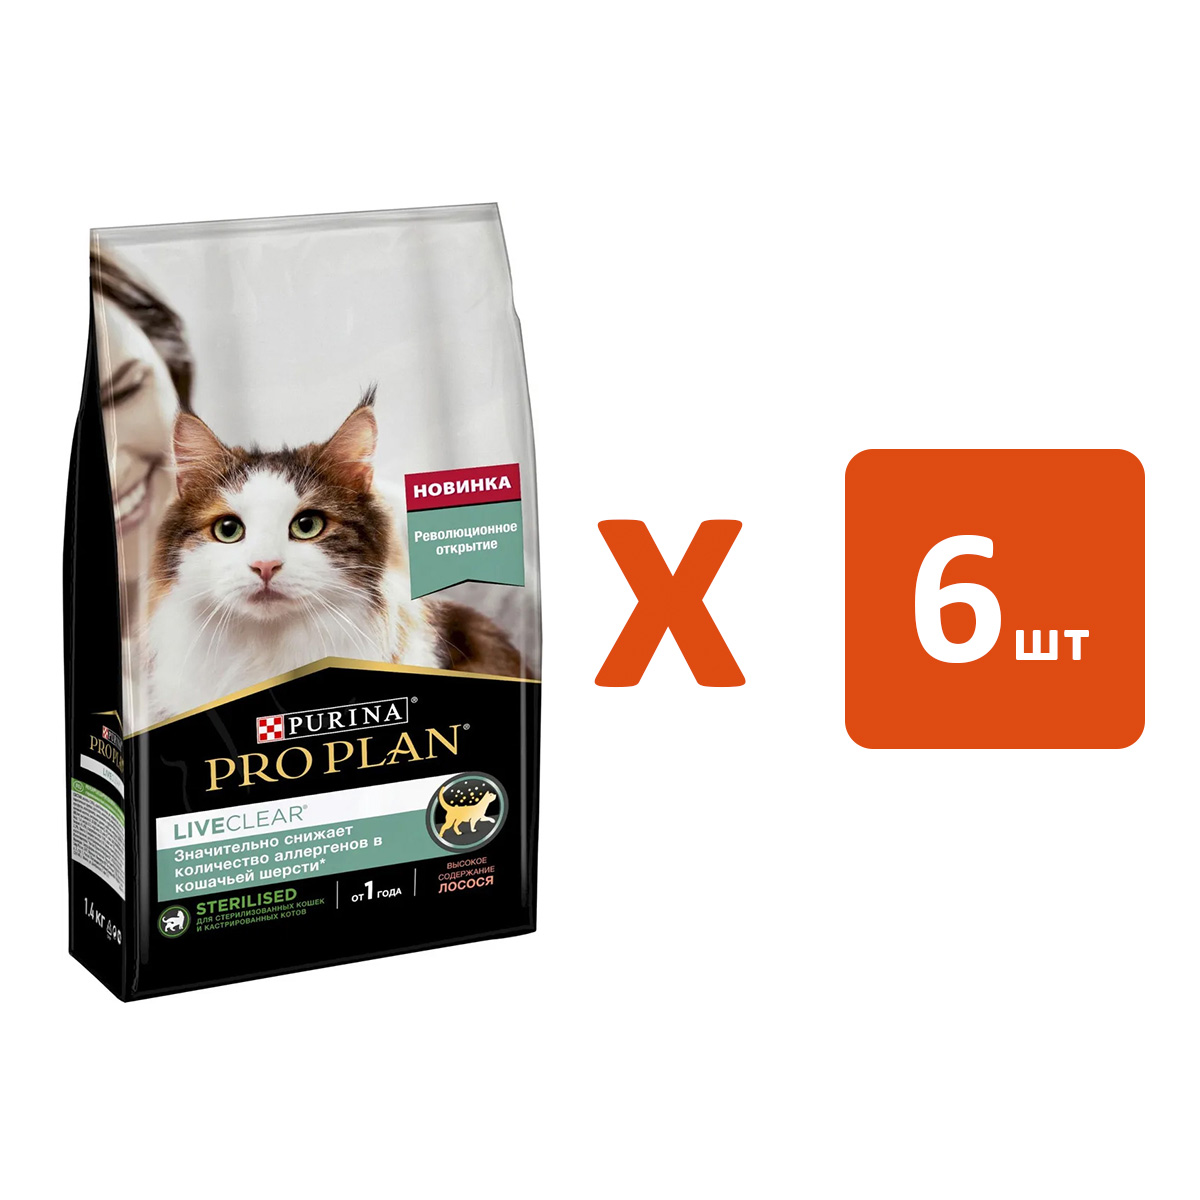 

Сухой корм для кошек Pro Plan Liveclear Sterilised, индейка, 6шт по 1,4кг